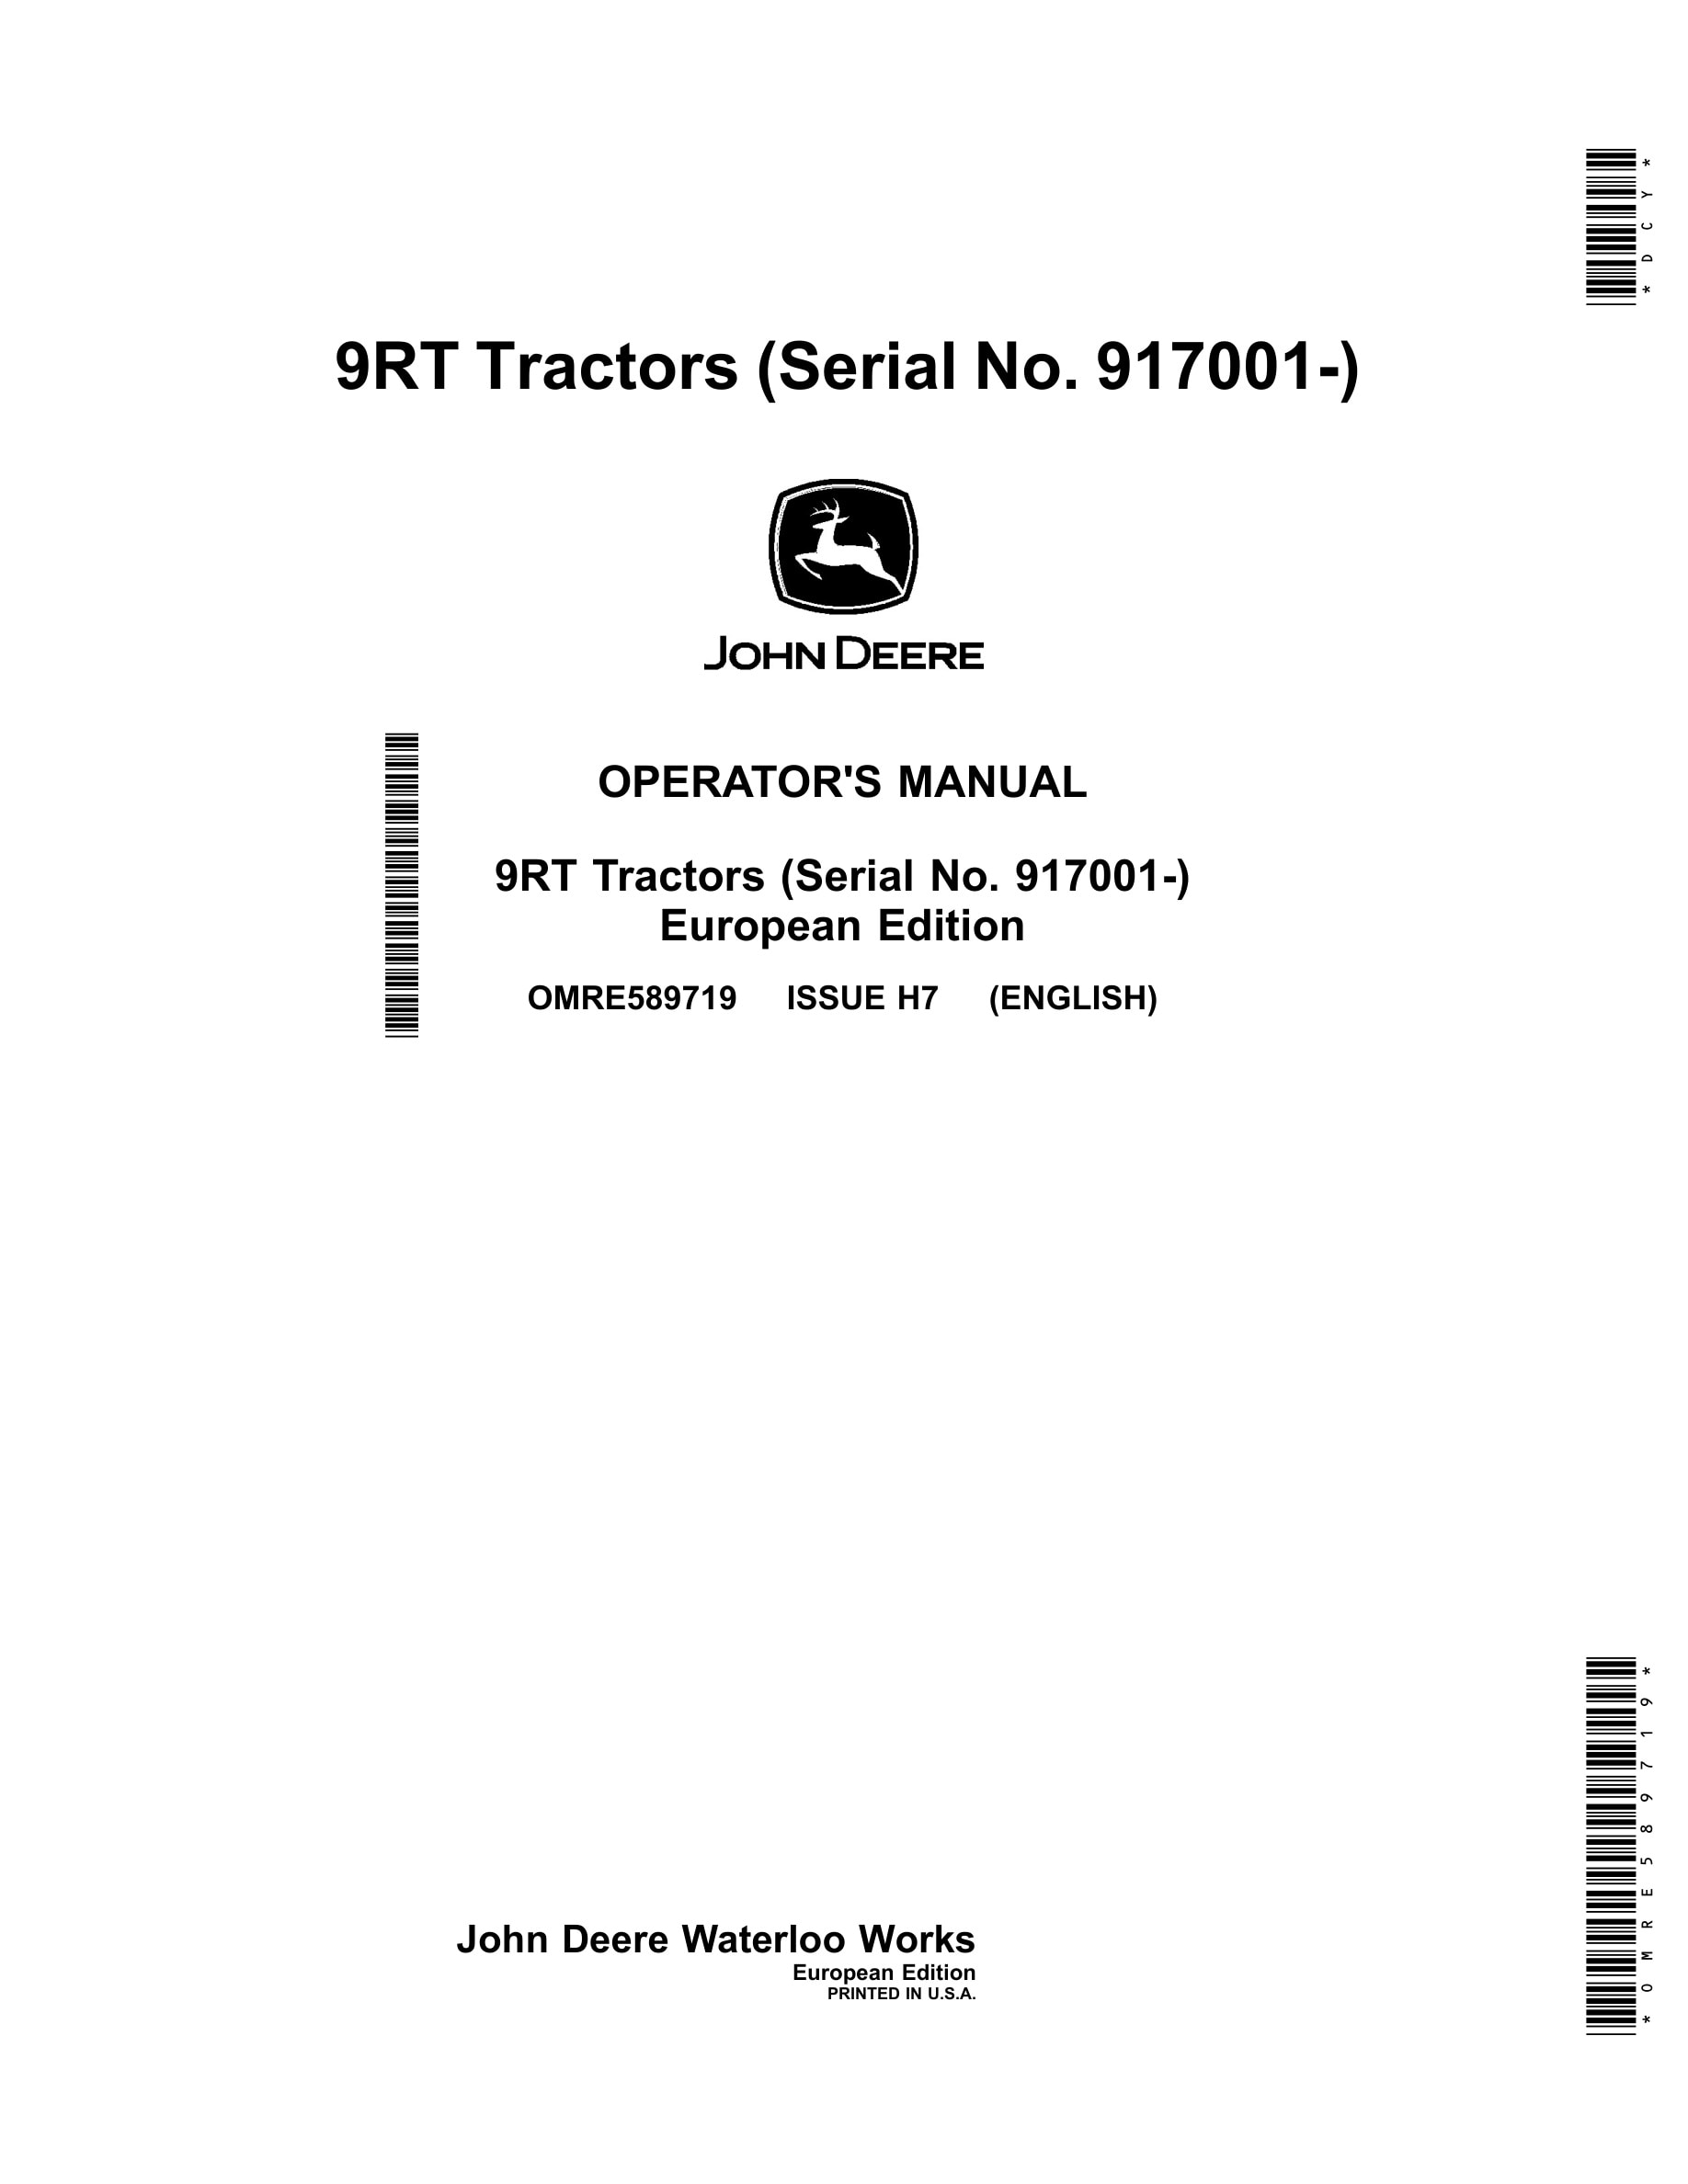 John Deere 9rt Tractors Operator Manuals OMRE589719-1